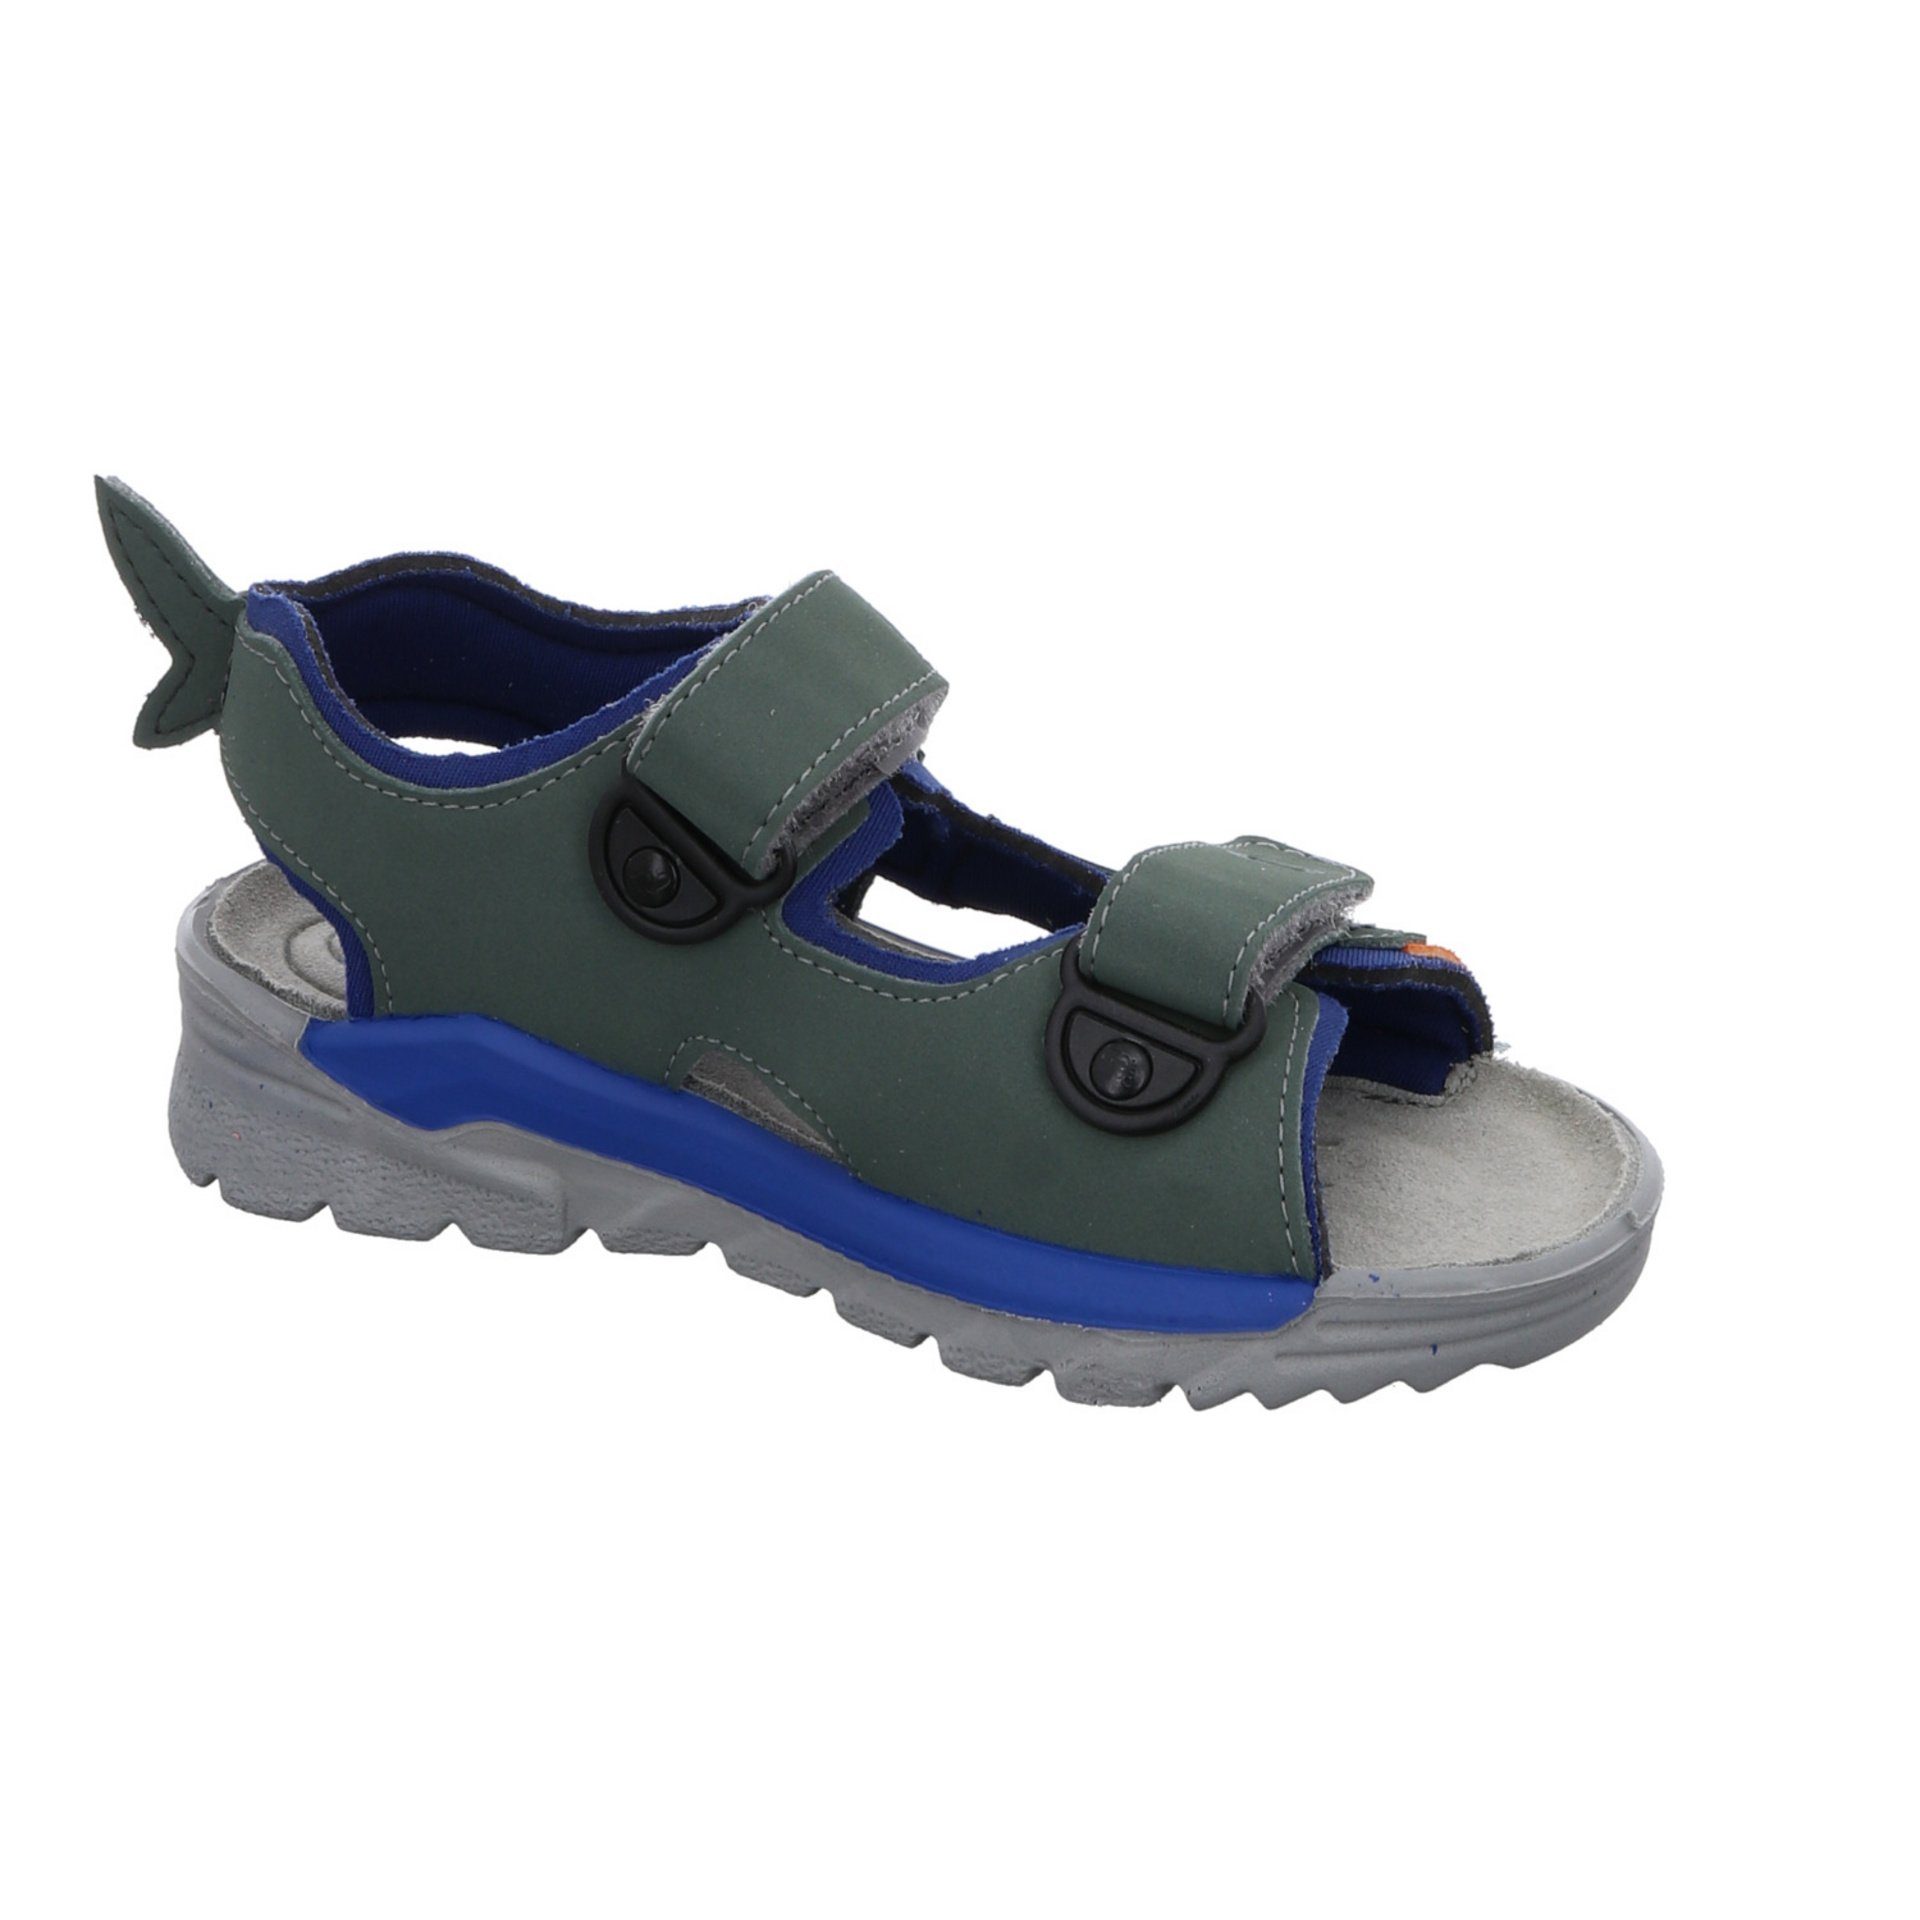 Ricosta Jungen Sandalen Schuhe Shark Kinderschuhe Sandale Textil grün Sandale